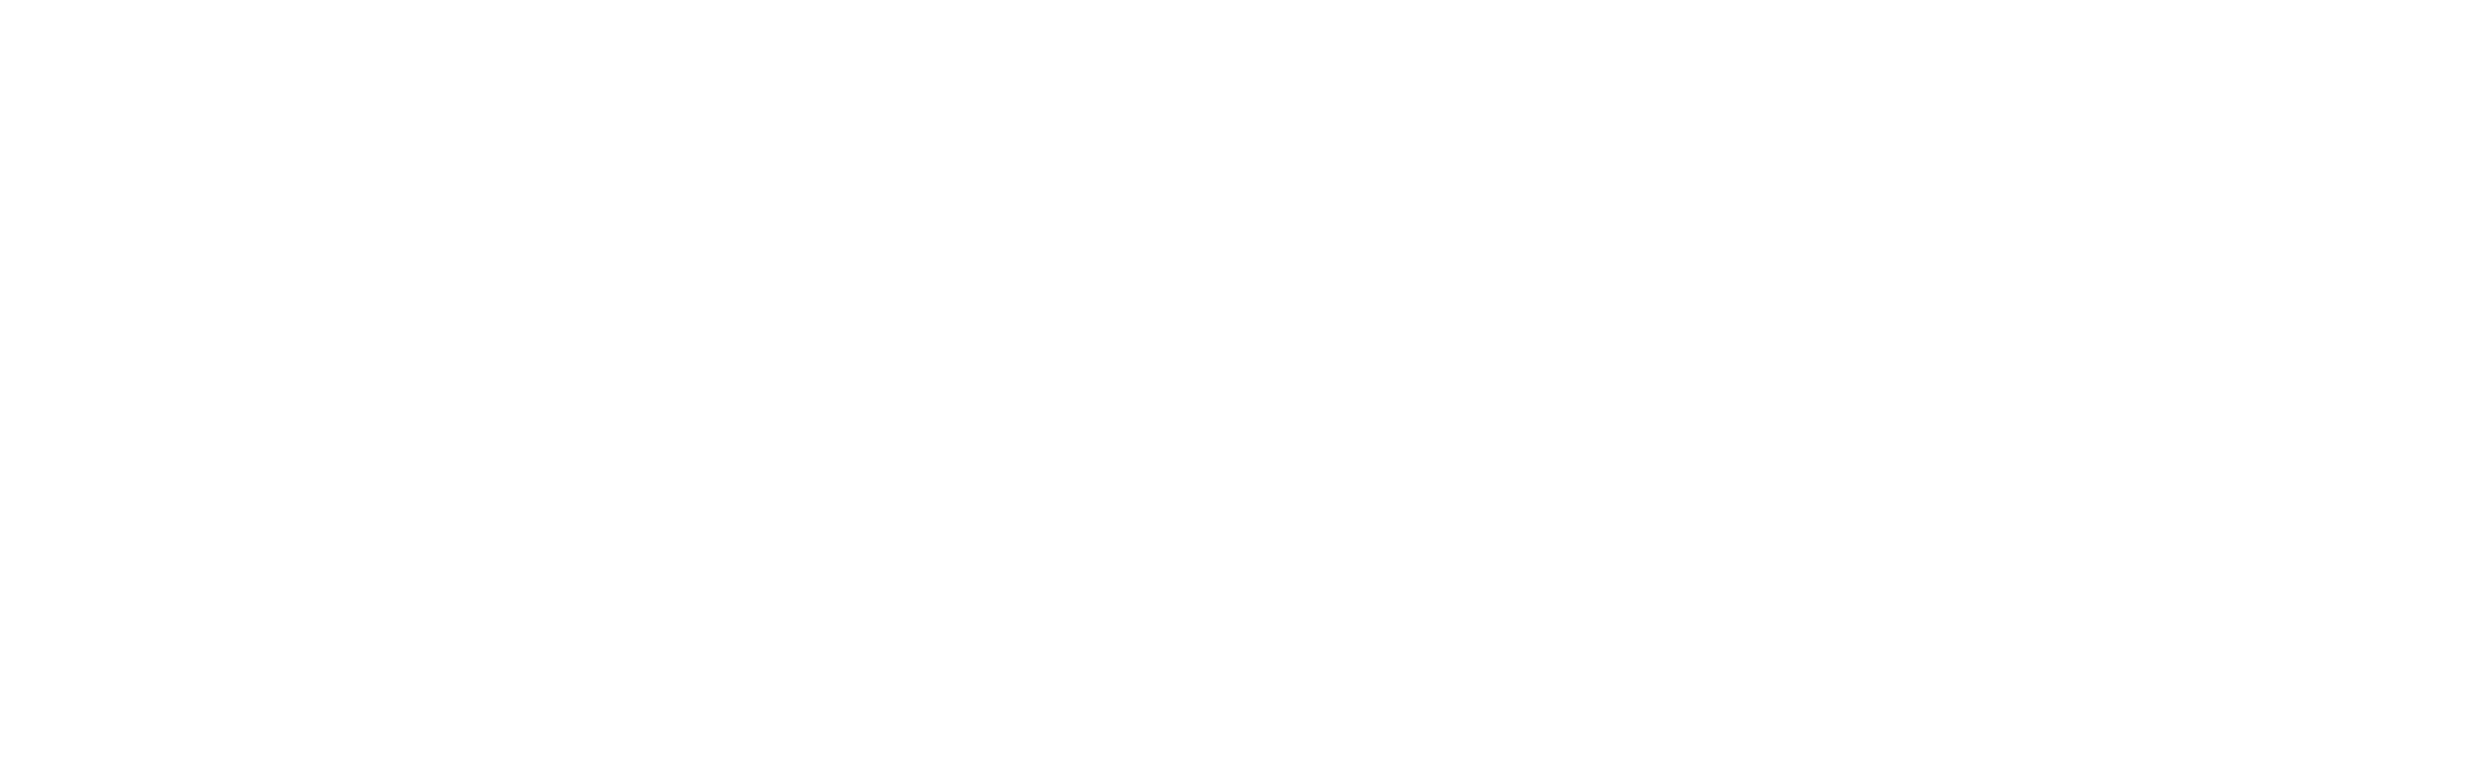 Atmosec logo white